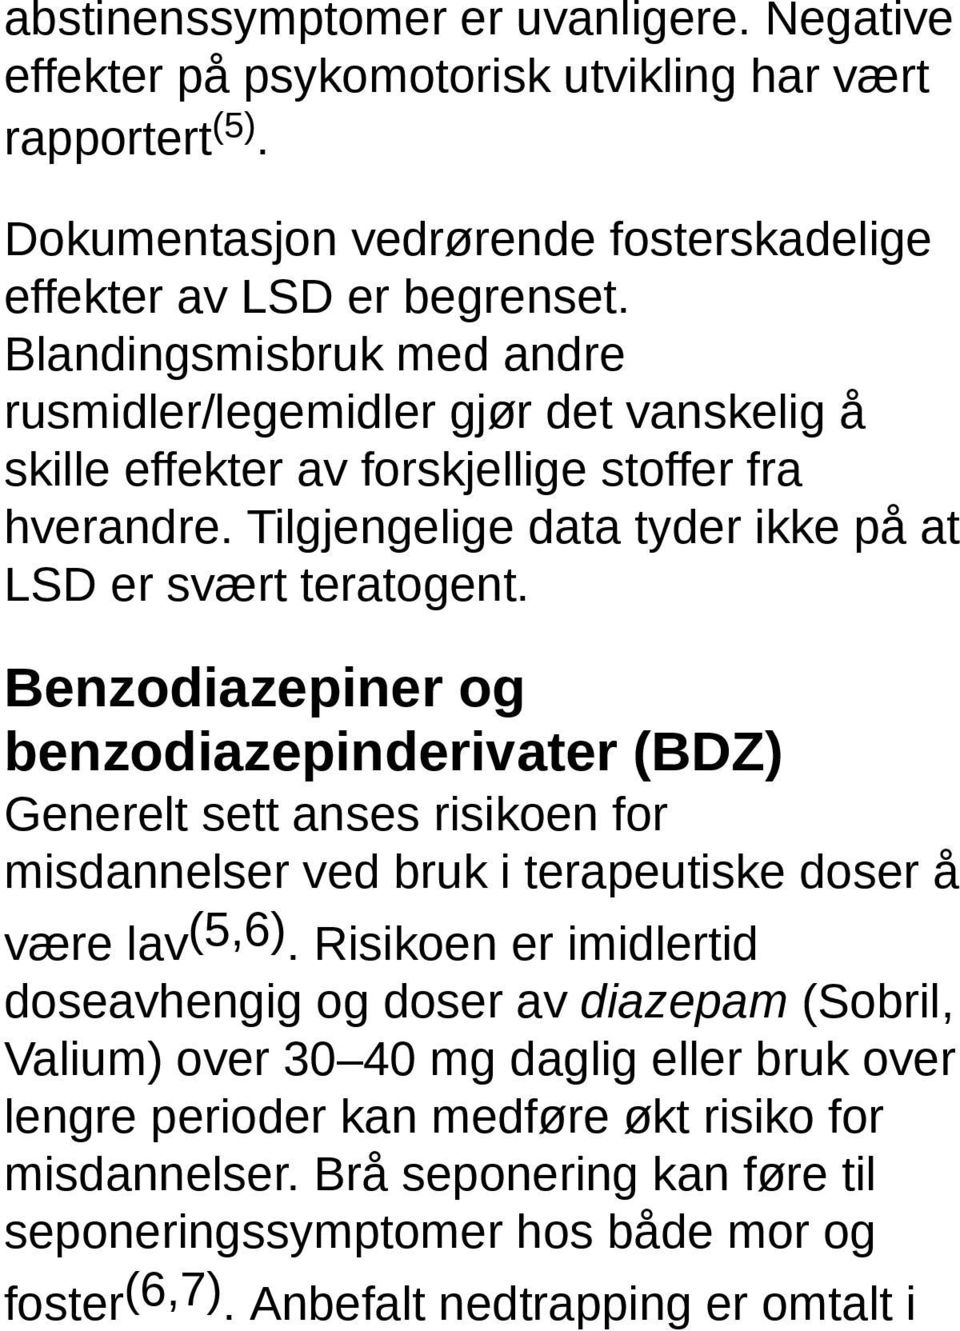 Benzodiazepiner og benzodiazepinderivater (BDZ) Generelt sett anses risikoen for misdannelser ved bruk i terapeutiske doser å være lav (5,6).